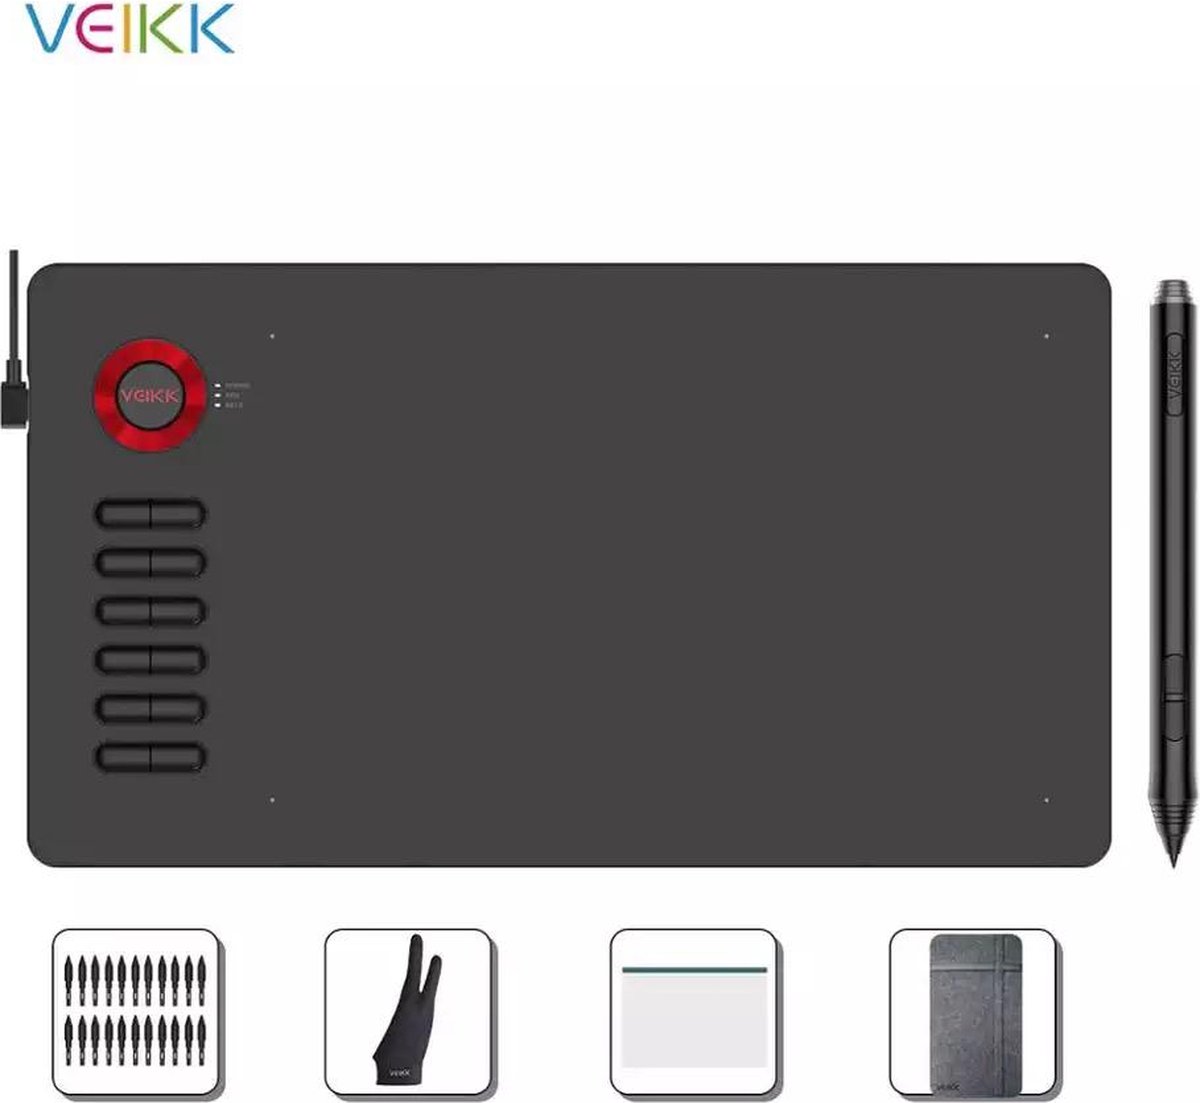 Veikk Tekentablet A15 Pro - 10x6 inch - grafische XL teken tablet - Batterij vrije pen - 12 sneltoetsen - Gratis berschermhoes